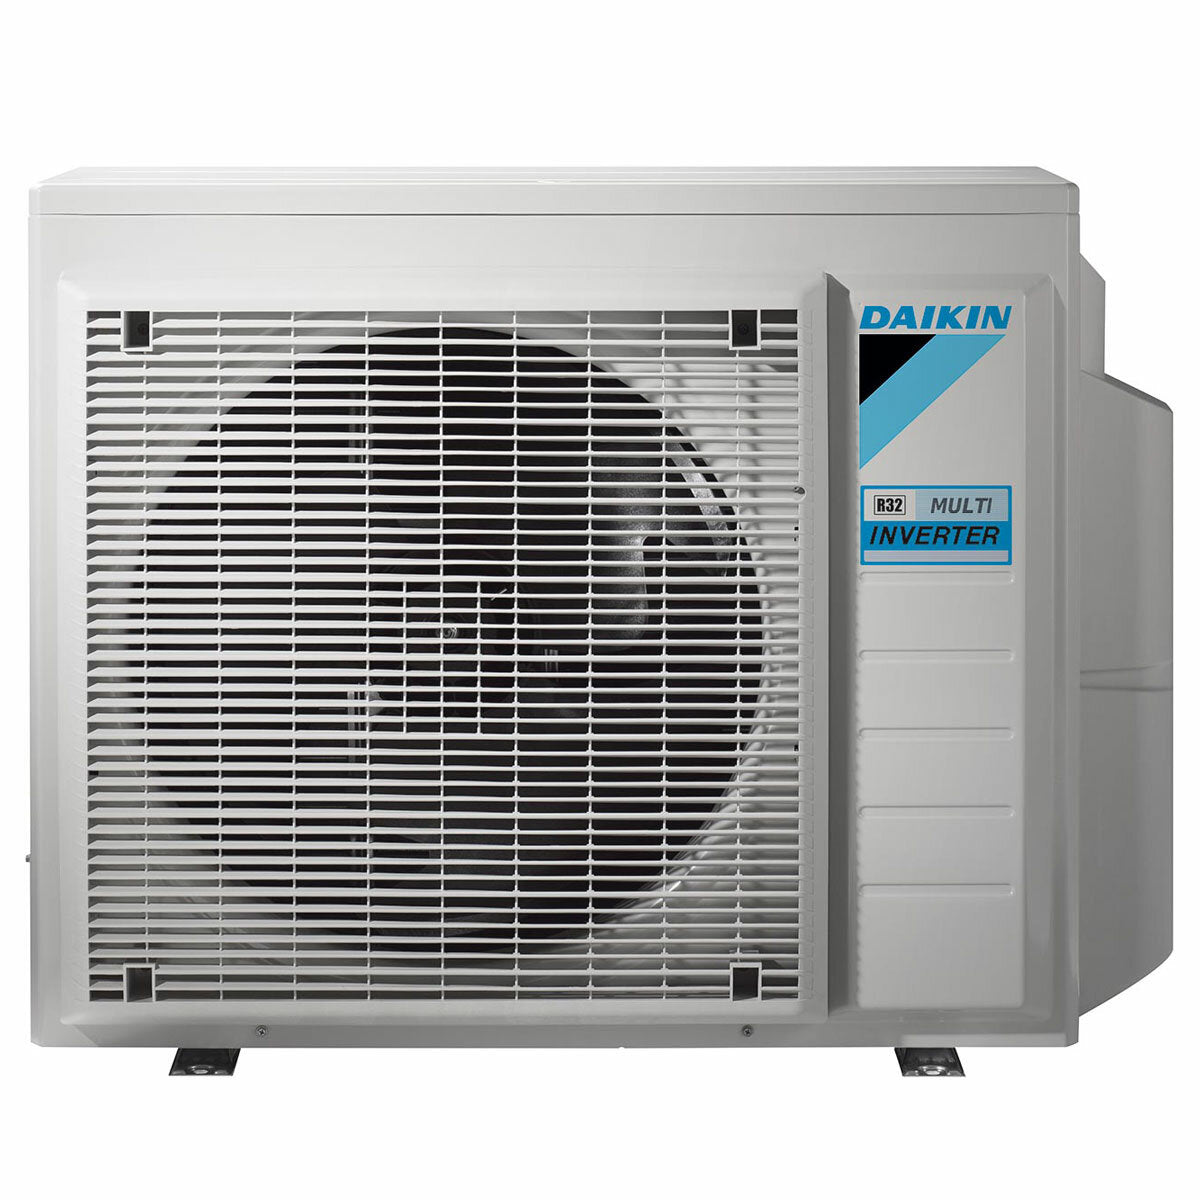 Daikin Emura 3 air conditioner penta split 9000+9000+9000+12000+15000 BTU inverter A++ wifi outdoor unit 7.8 kW Silver